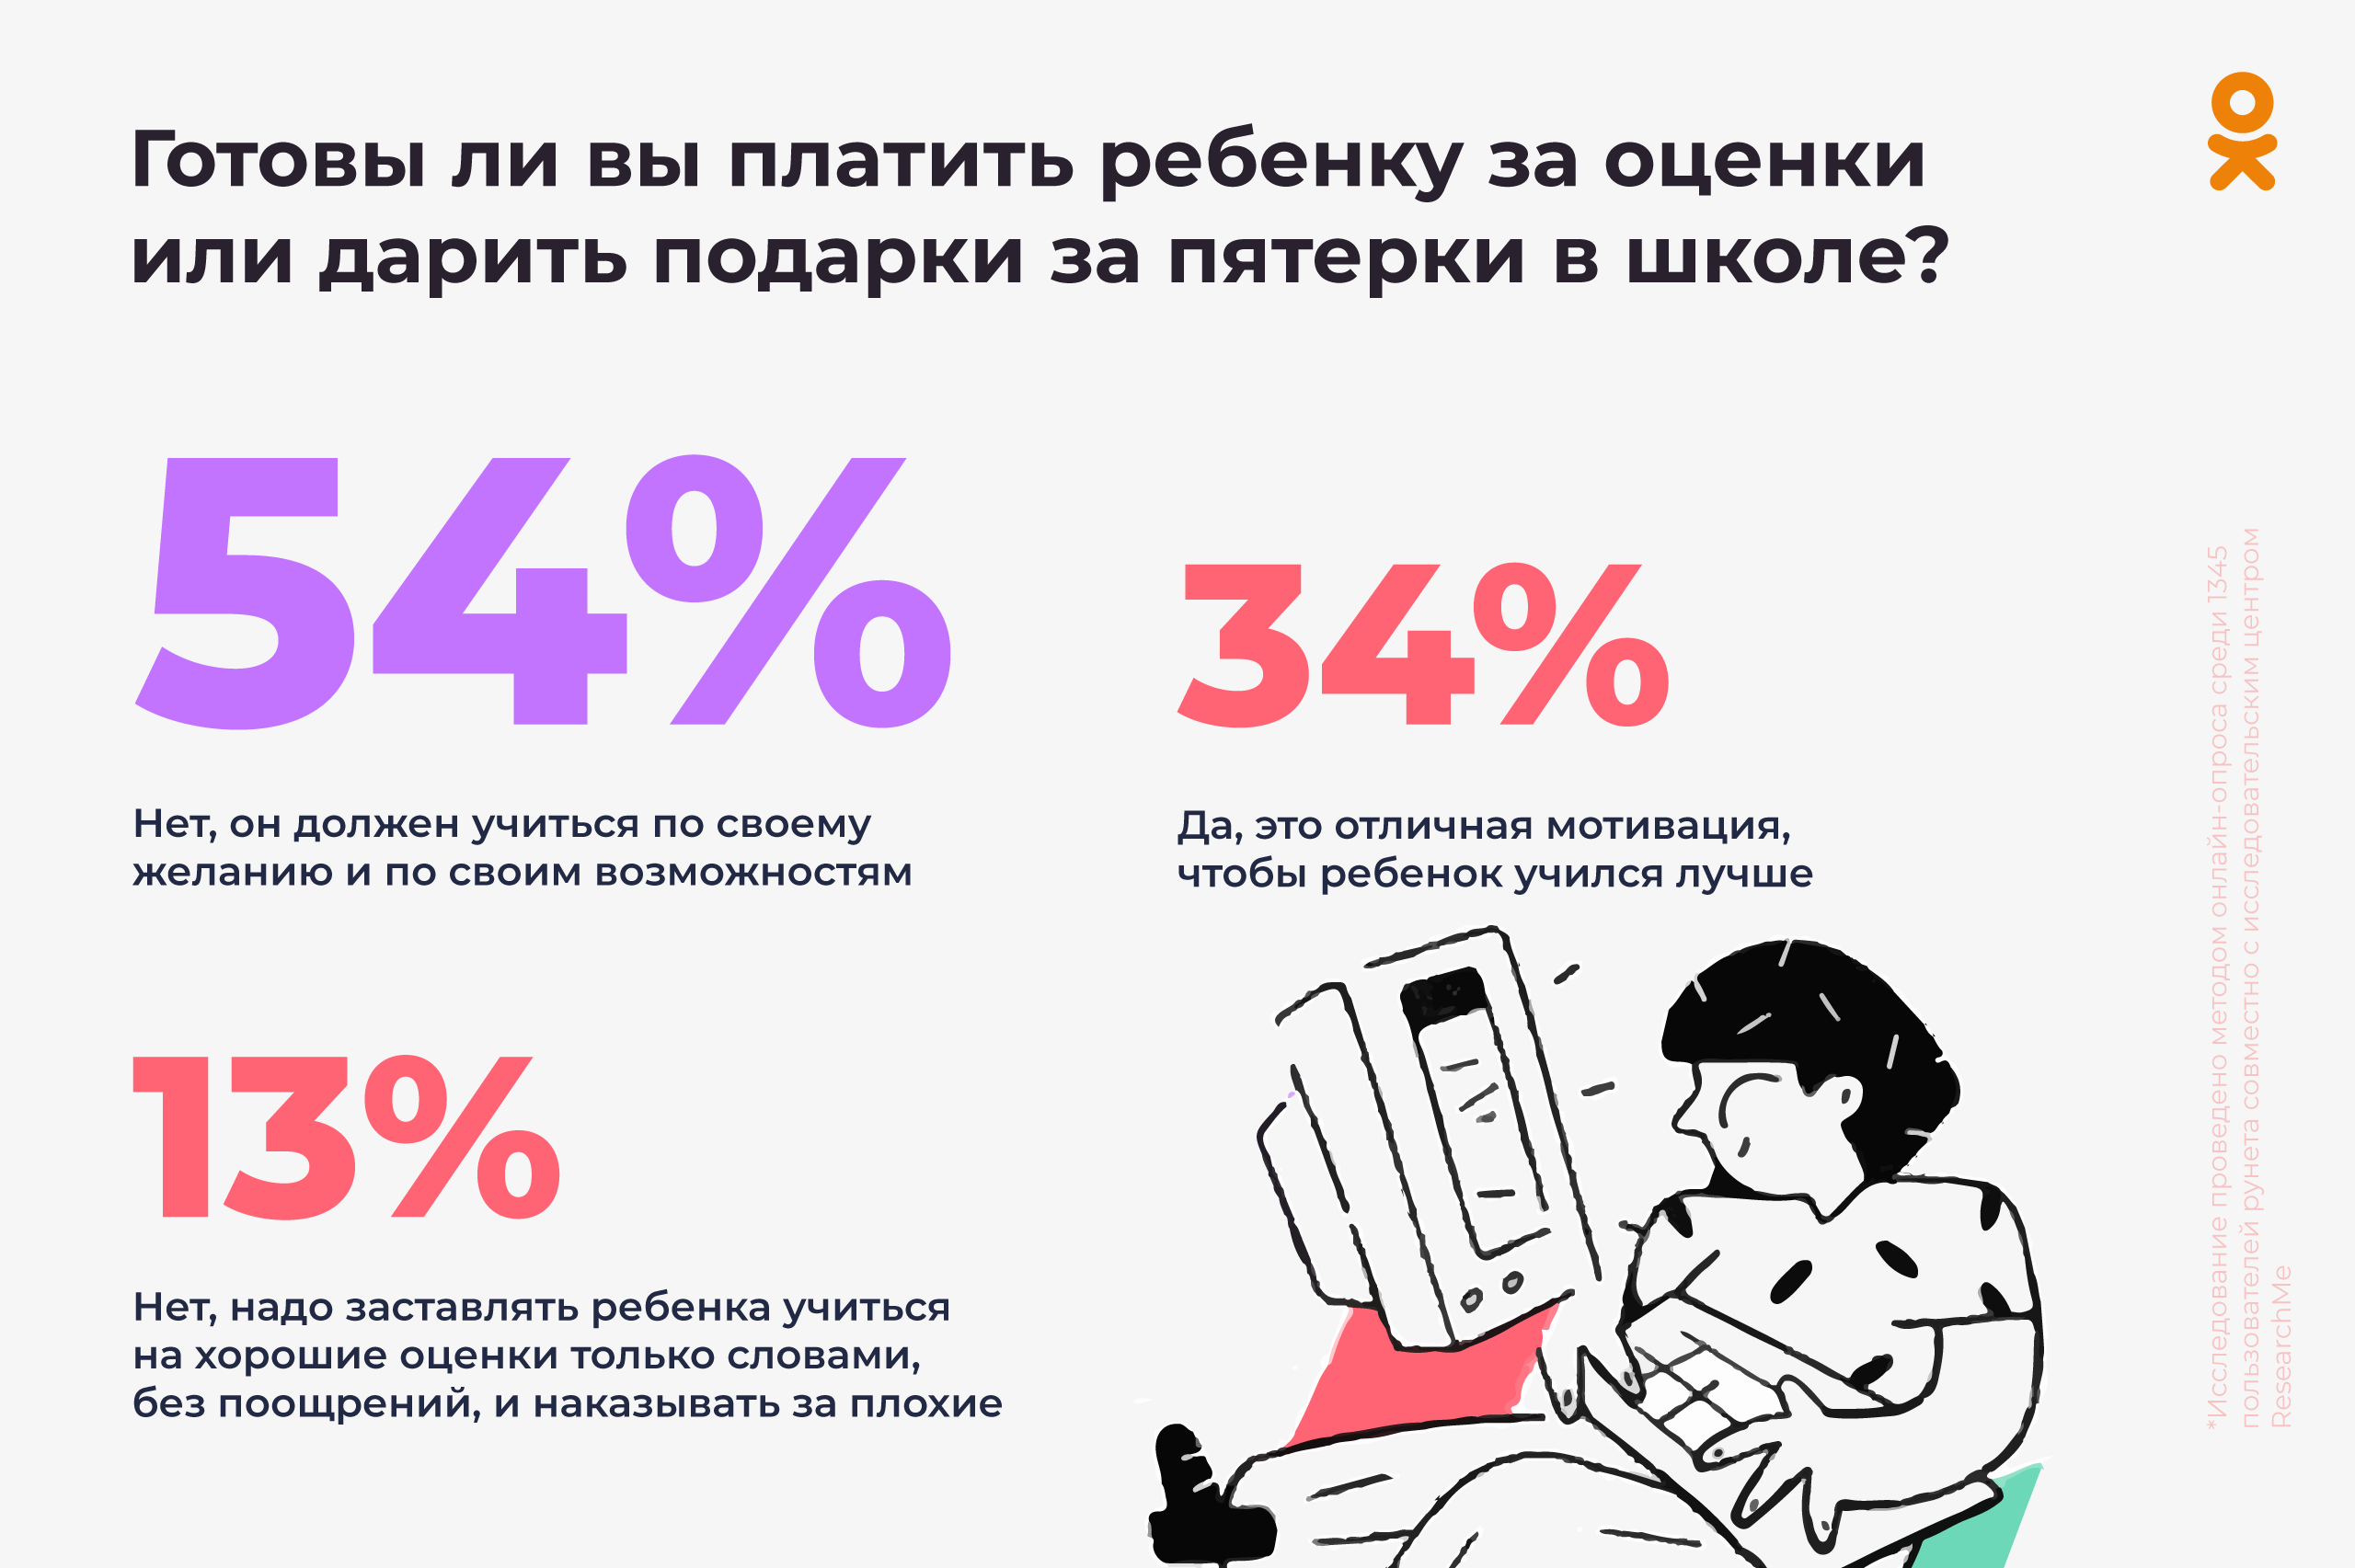 56% матерей хотят открыто делиться своими проблемами в социальных сетях